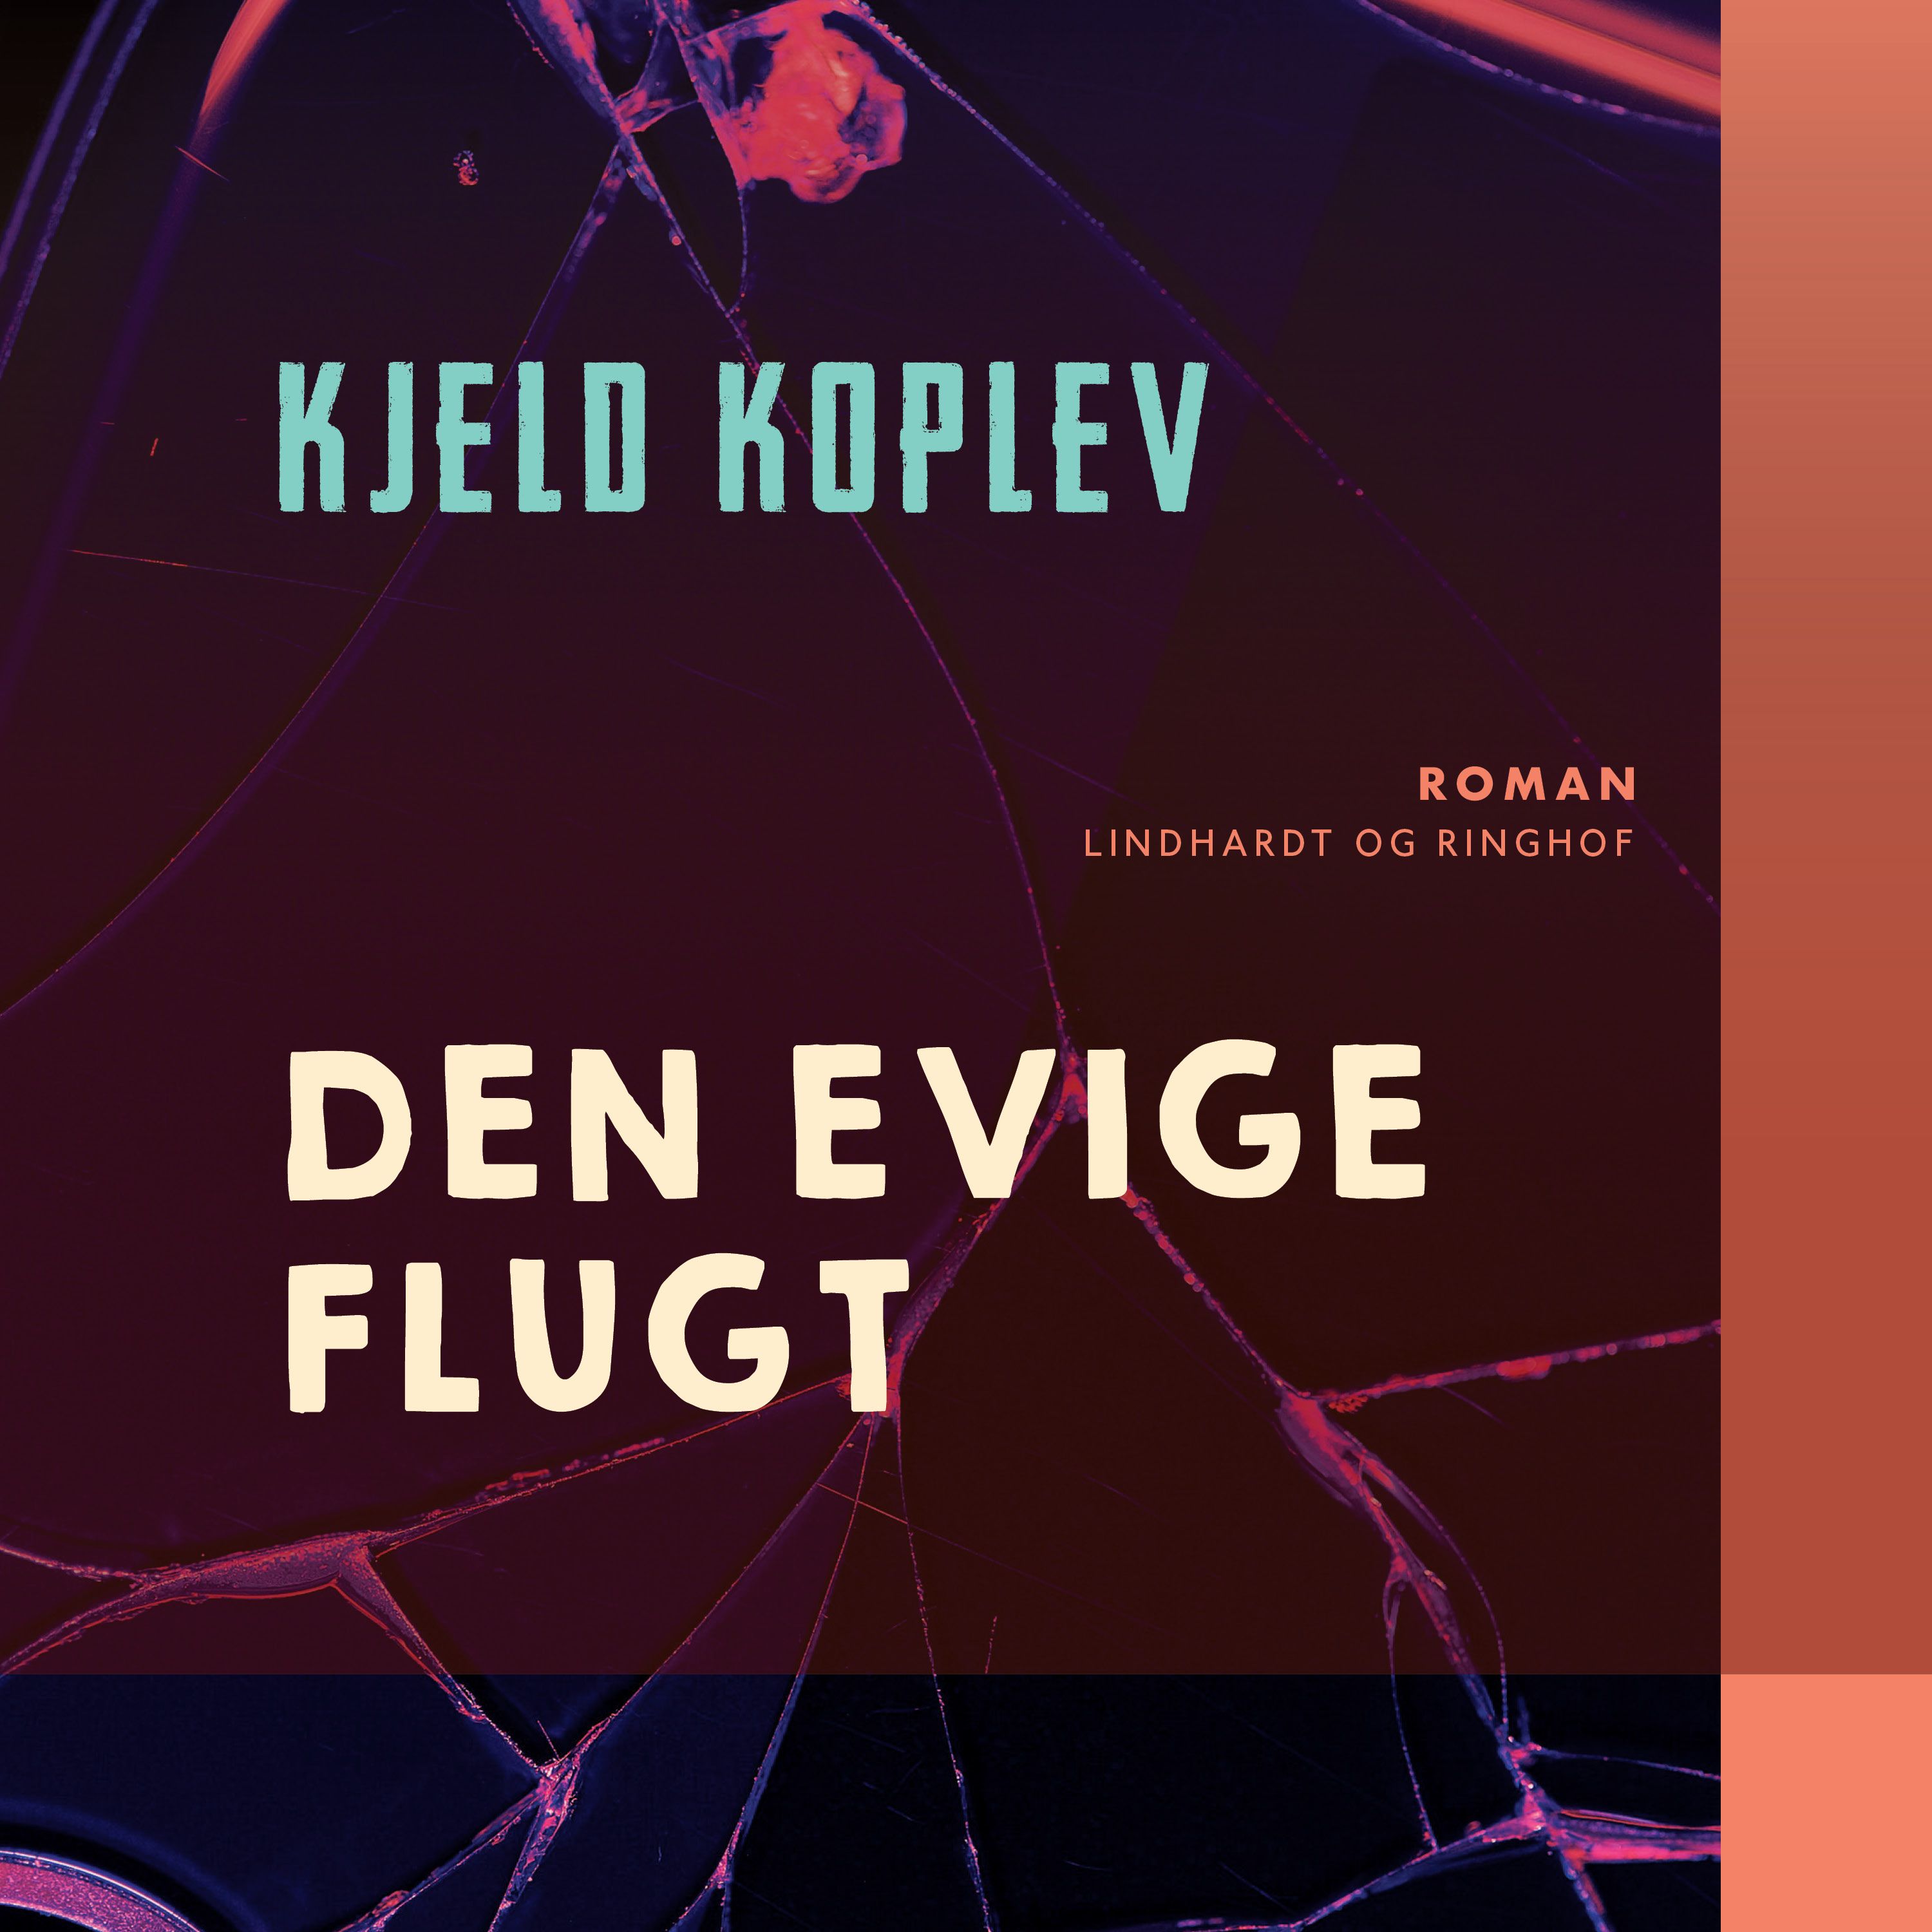 Den evige flugt, lydbog af Kjeld Koplev